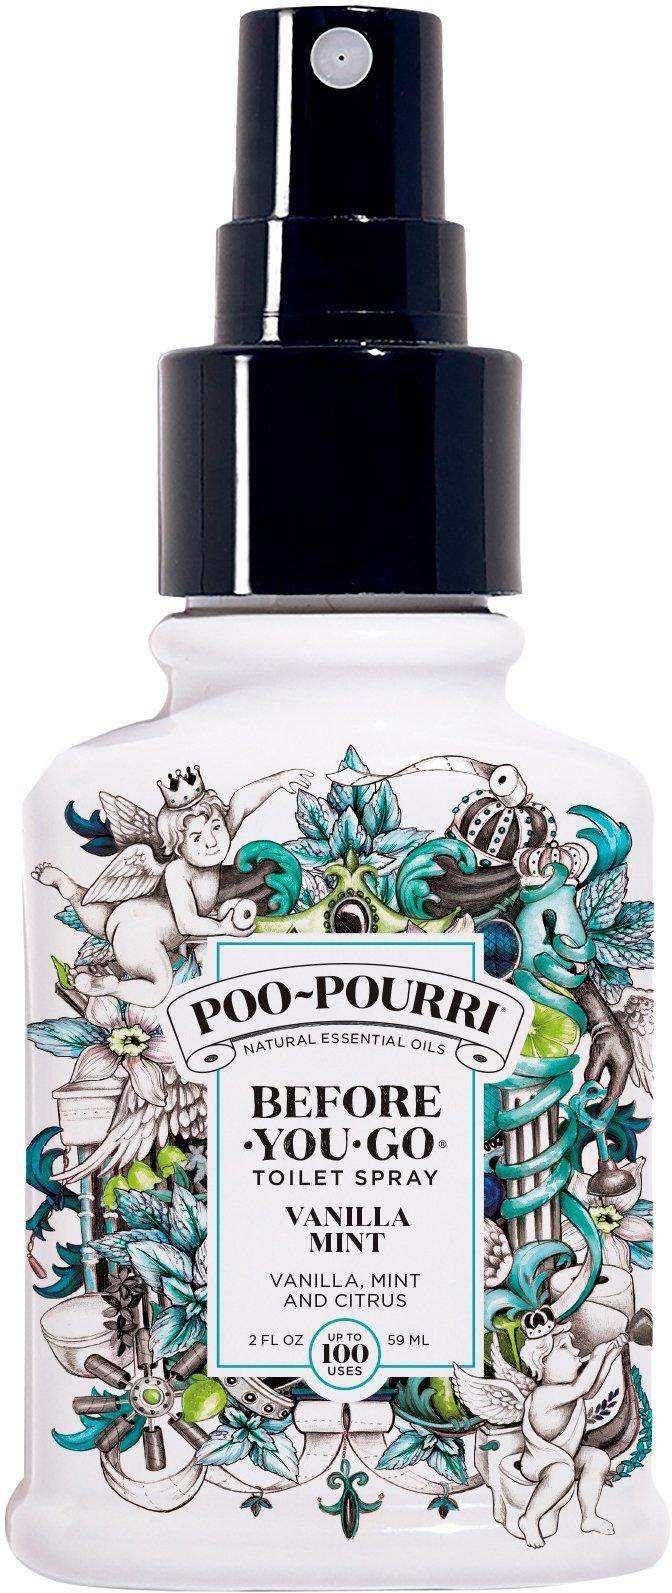 Poo-Pourri 2 fl. oz. Vanilla Mint Before You Go Toilet Spray